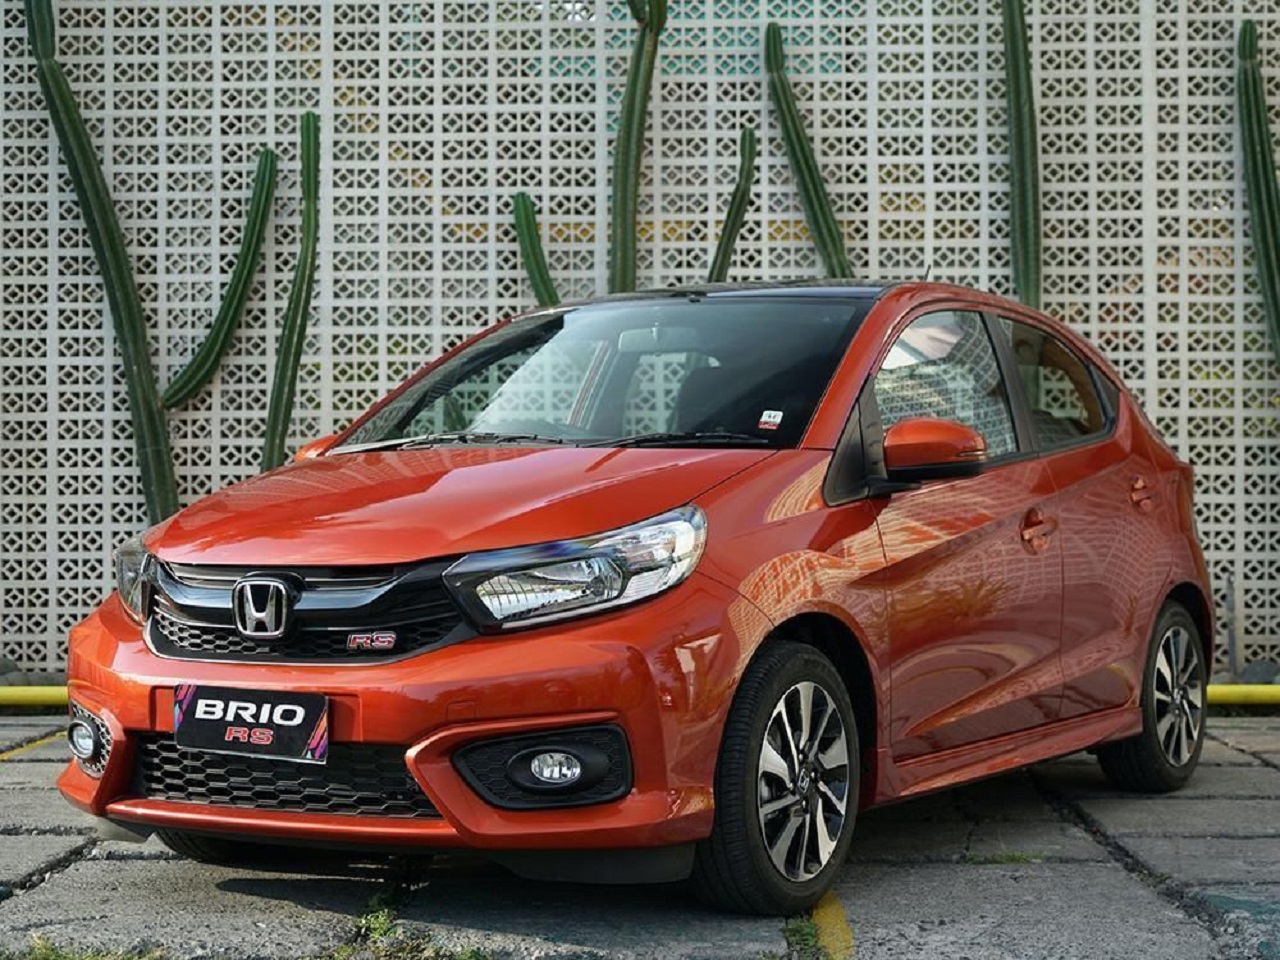 Raihan Positif Penjualan Honda Naik 54% per Mei, Brio Paling Laris